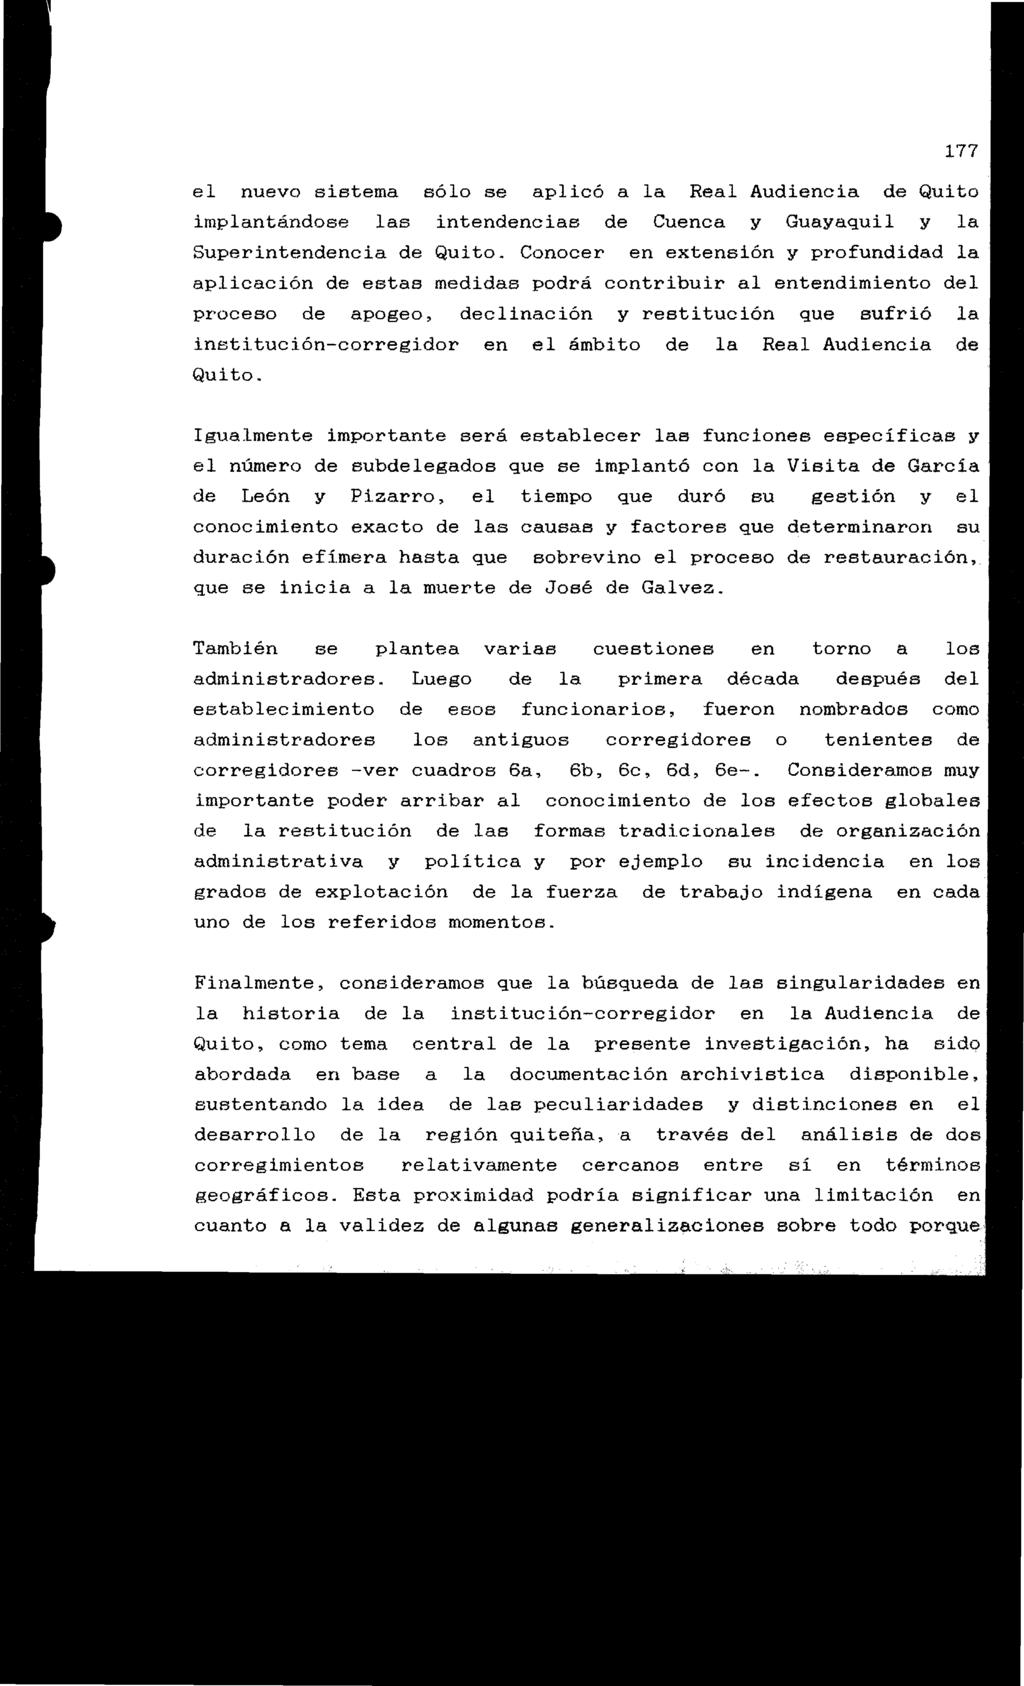 el nuevo sistema sólo se aplicó a la Real Audiencia de implantándose las intendencias de Cuenca y Guayaquil y Superintendencia de Quito.